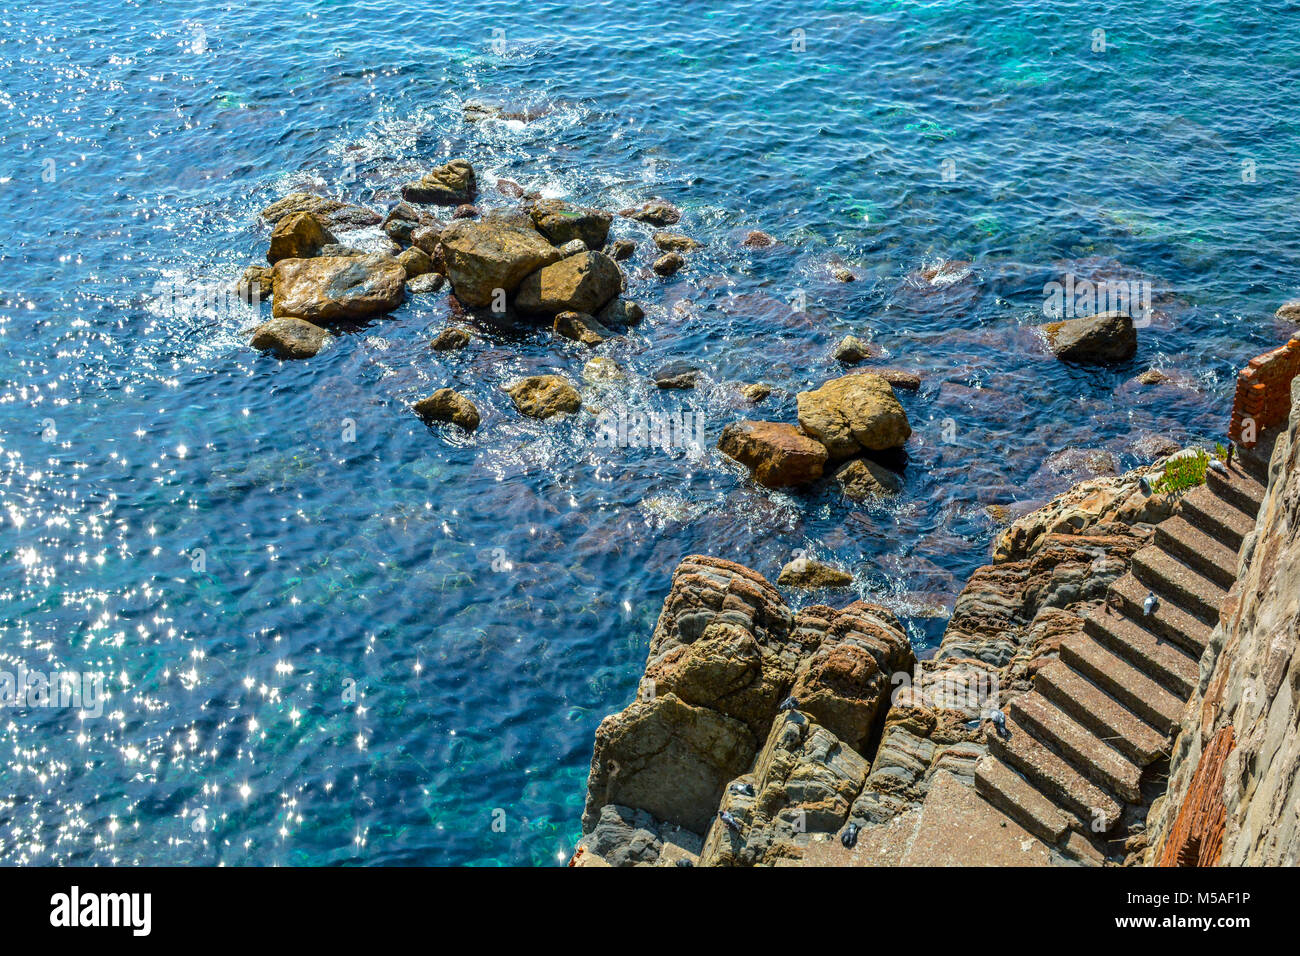 Die felsige Küste der Cinque Terre Italien mit der Sonne reflektiert die Aqua Blau flaches Meer während die Tauben auf die Schritte und große Felsen spielen Stockfoto